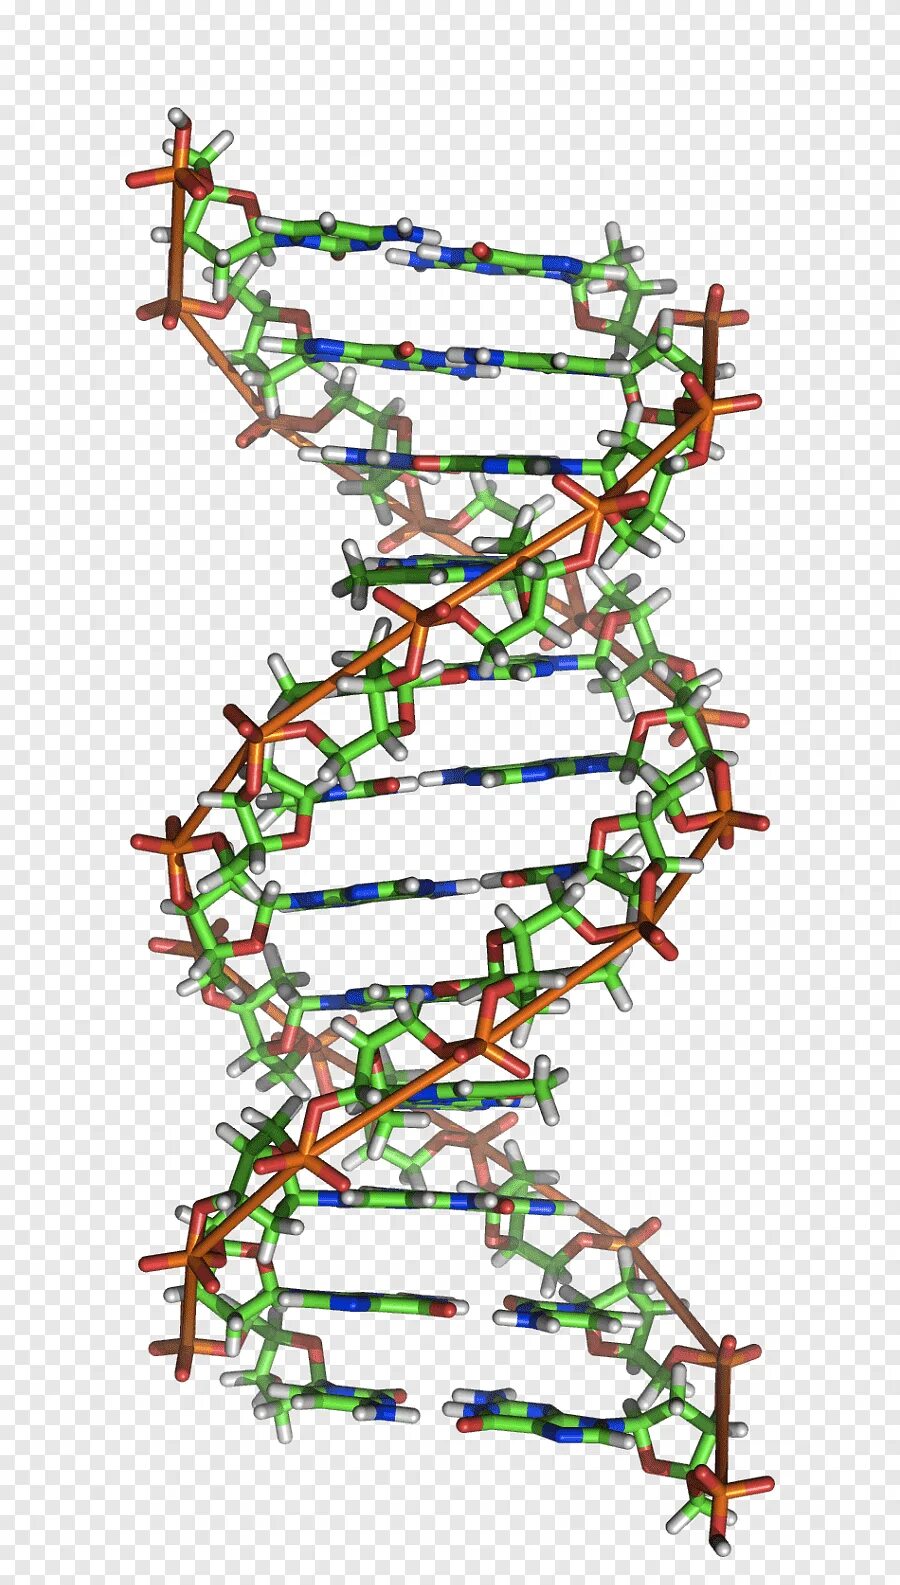 Рисунок молекулы рнк. Спираль ДНК И РНК. Двойная спираль РНК. Молекула ДНК. Генетическая спираль ДНК.